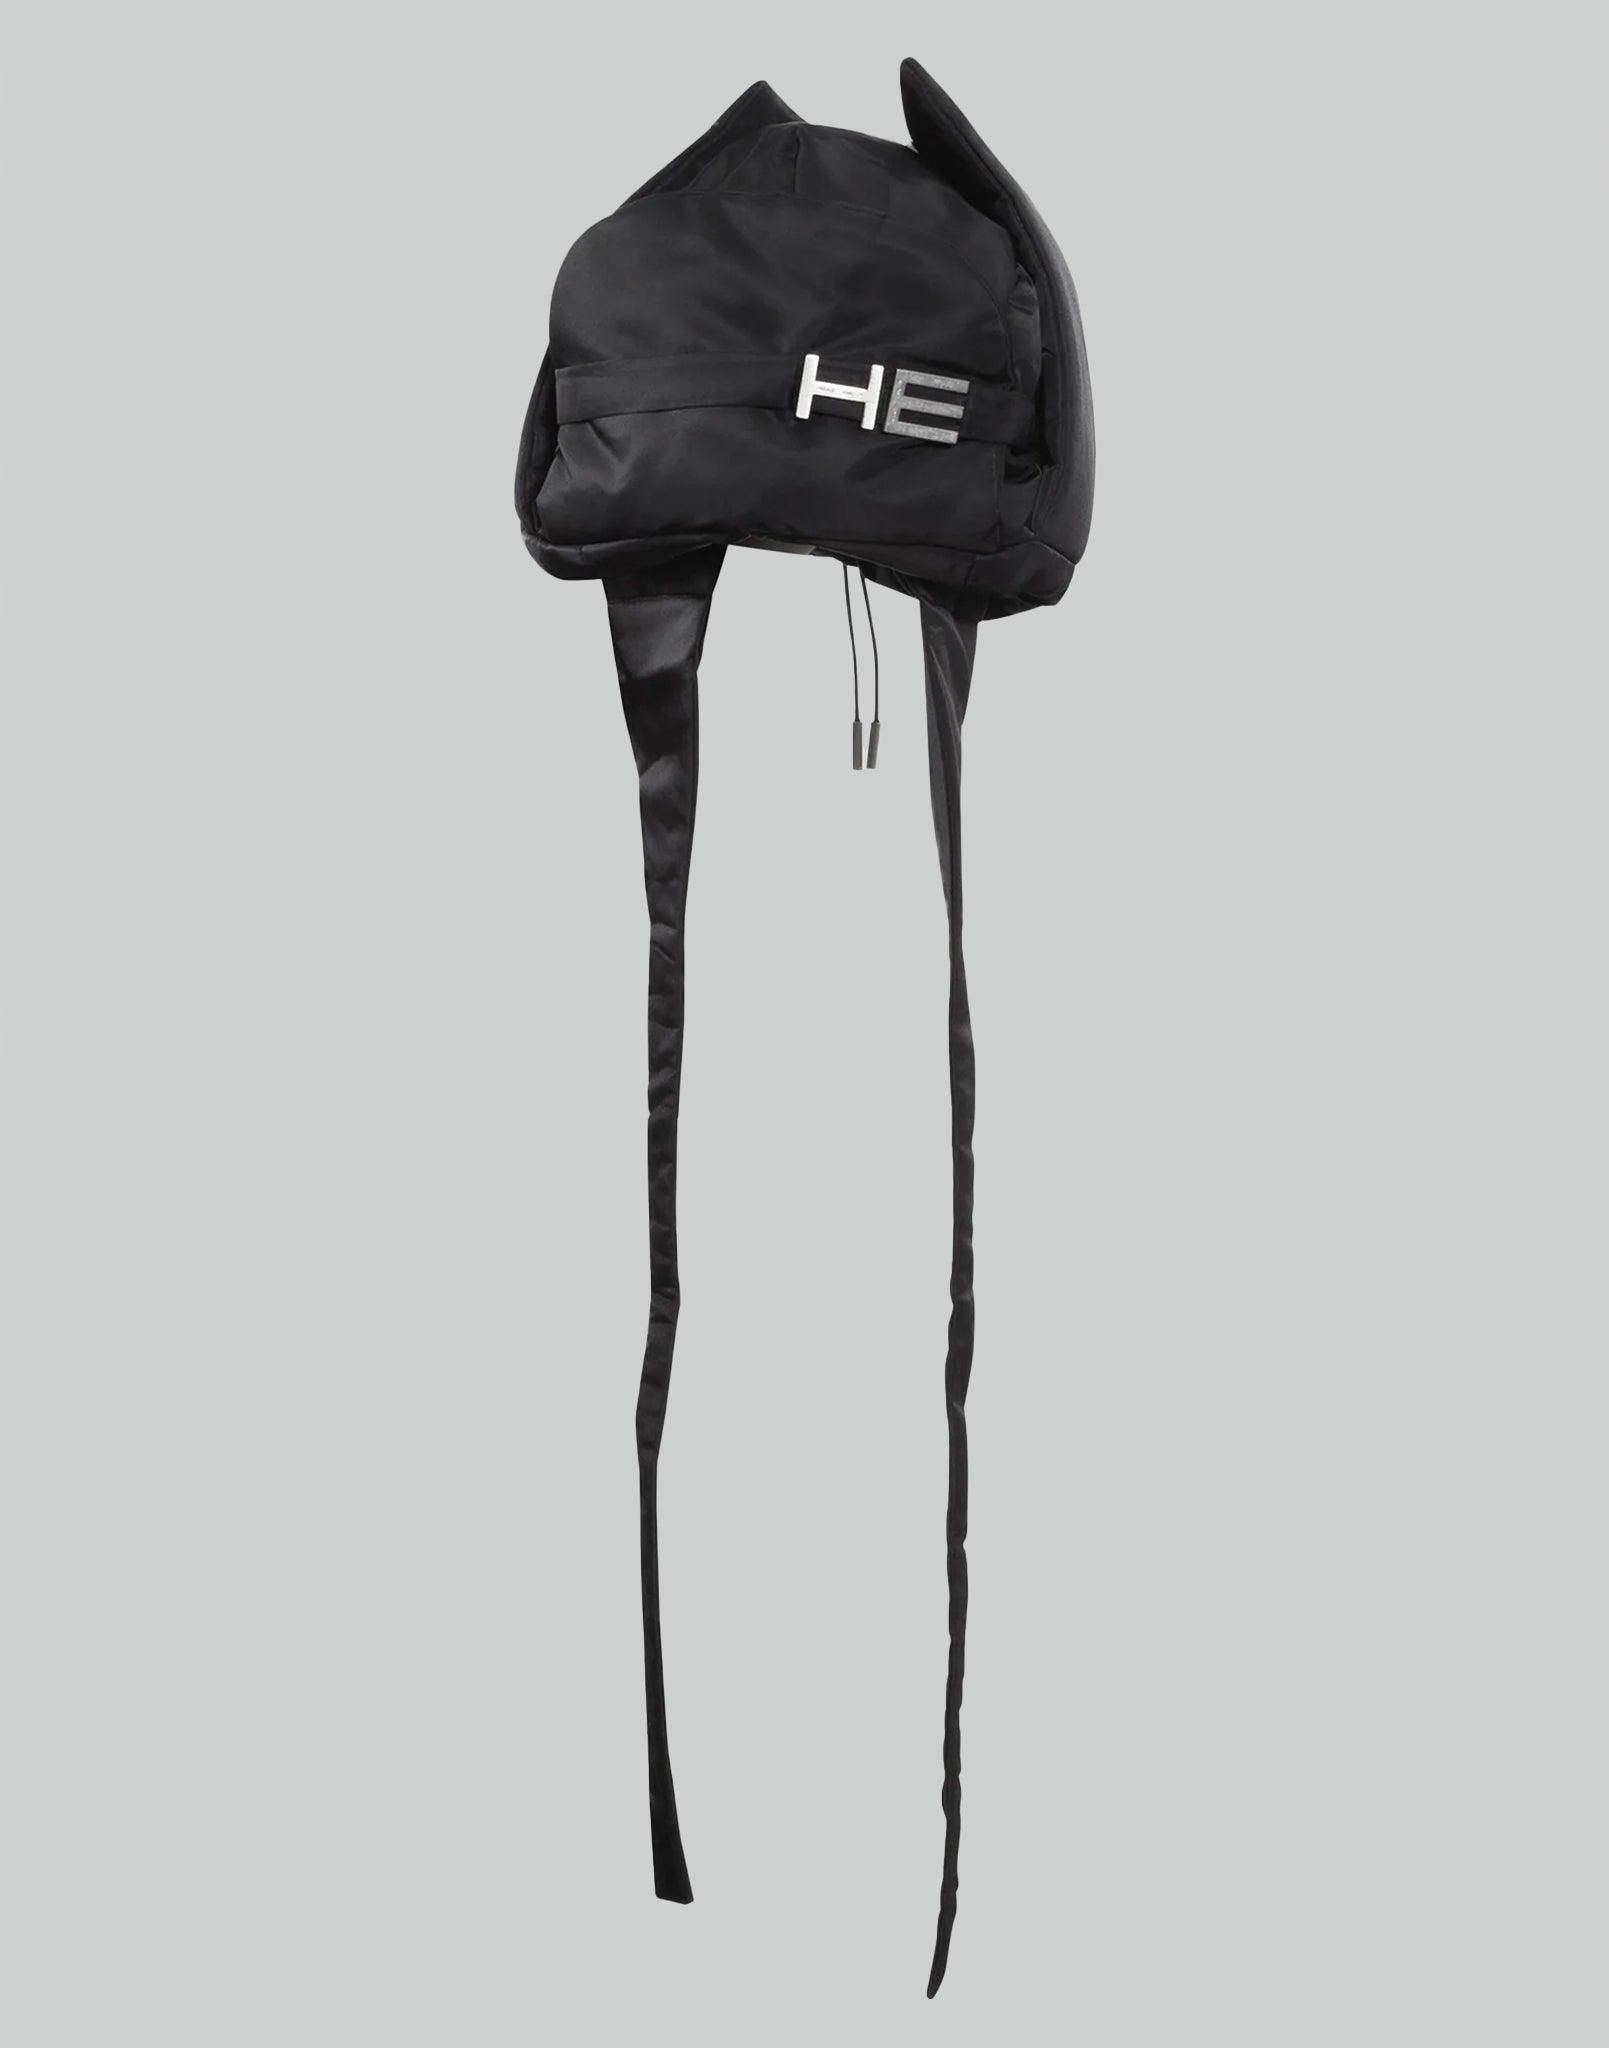 HELIOT EMIL SURREPTITIOUS TRAPPER HAT – 082plus